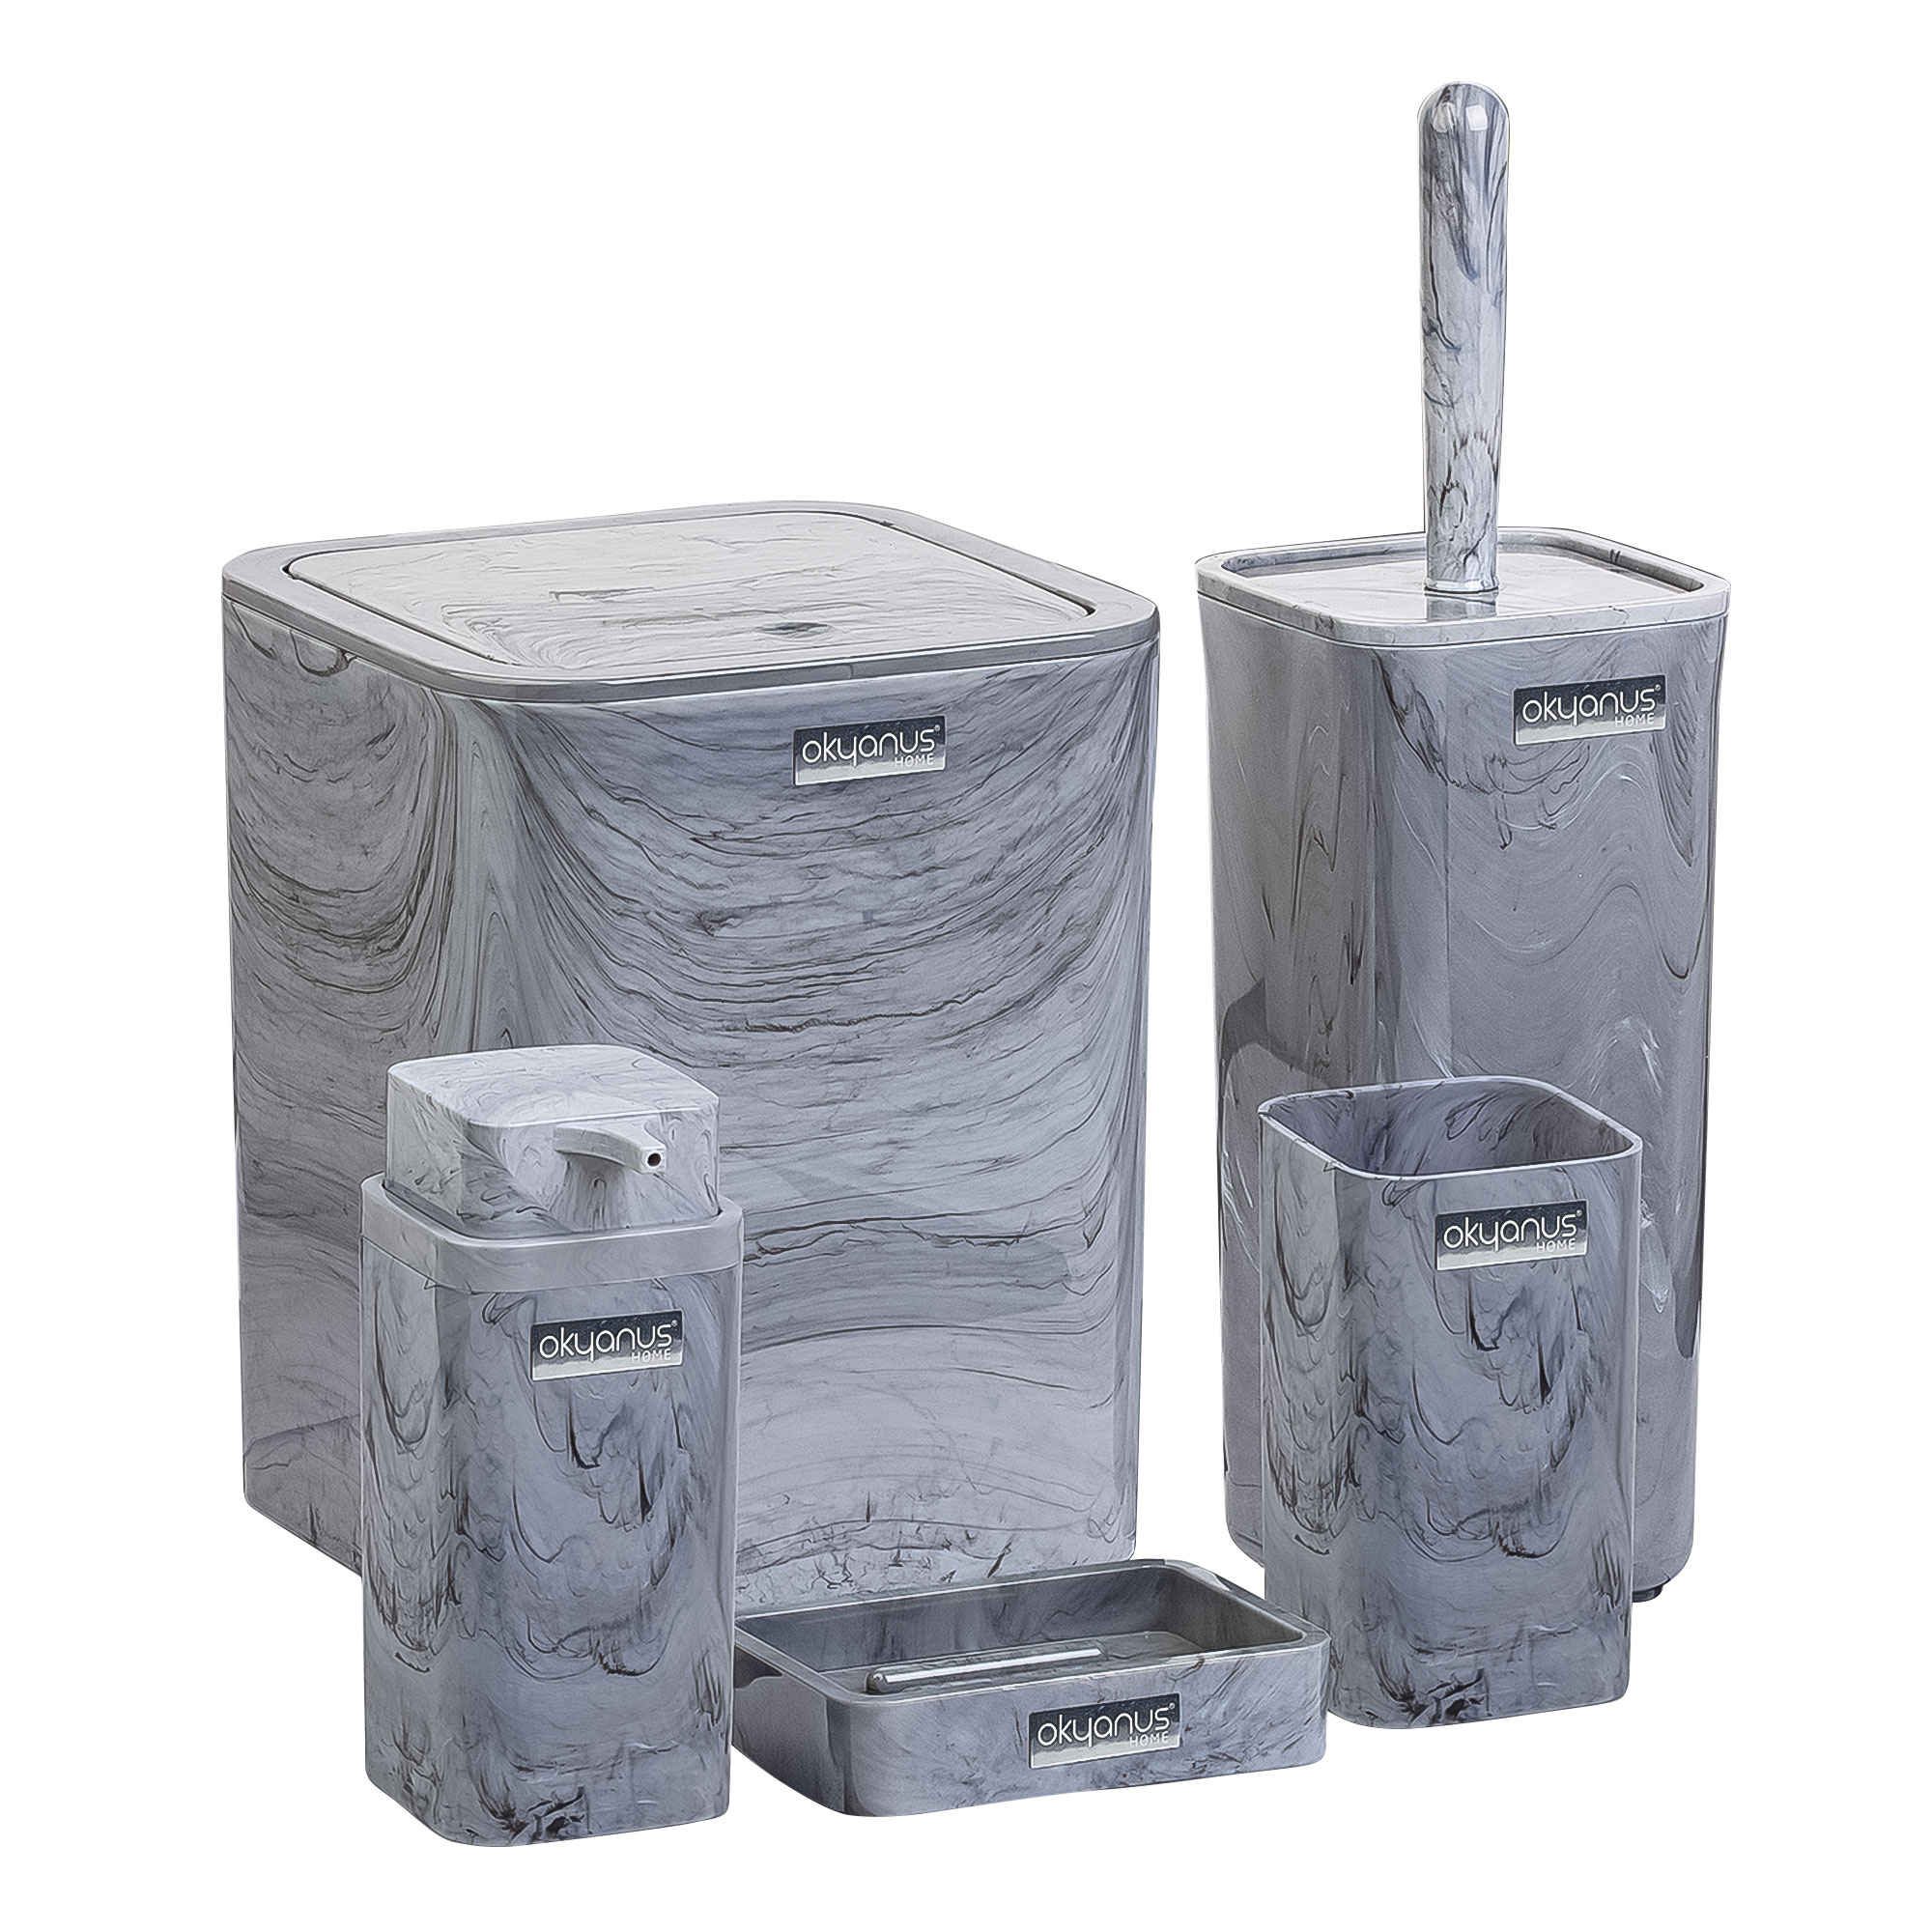 Набор аксессуаров для ванной Ag concept 5 предметов серый мрамор набор аксессуаров grohe essentials cube 5 предметов 40758001